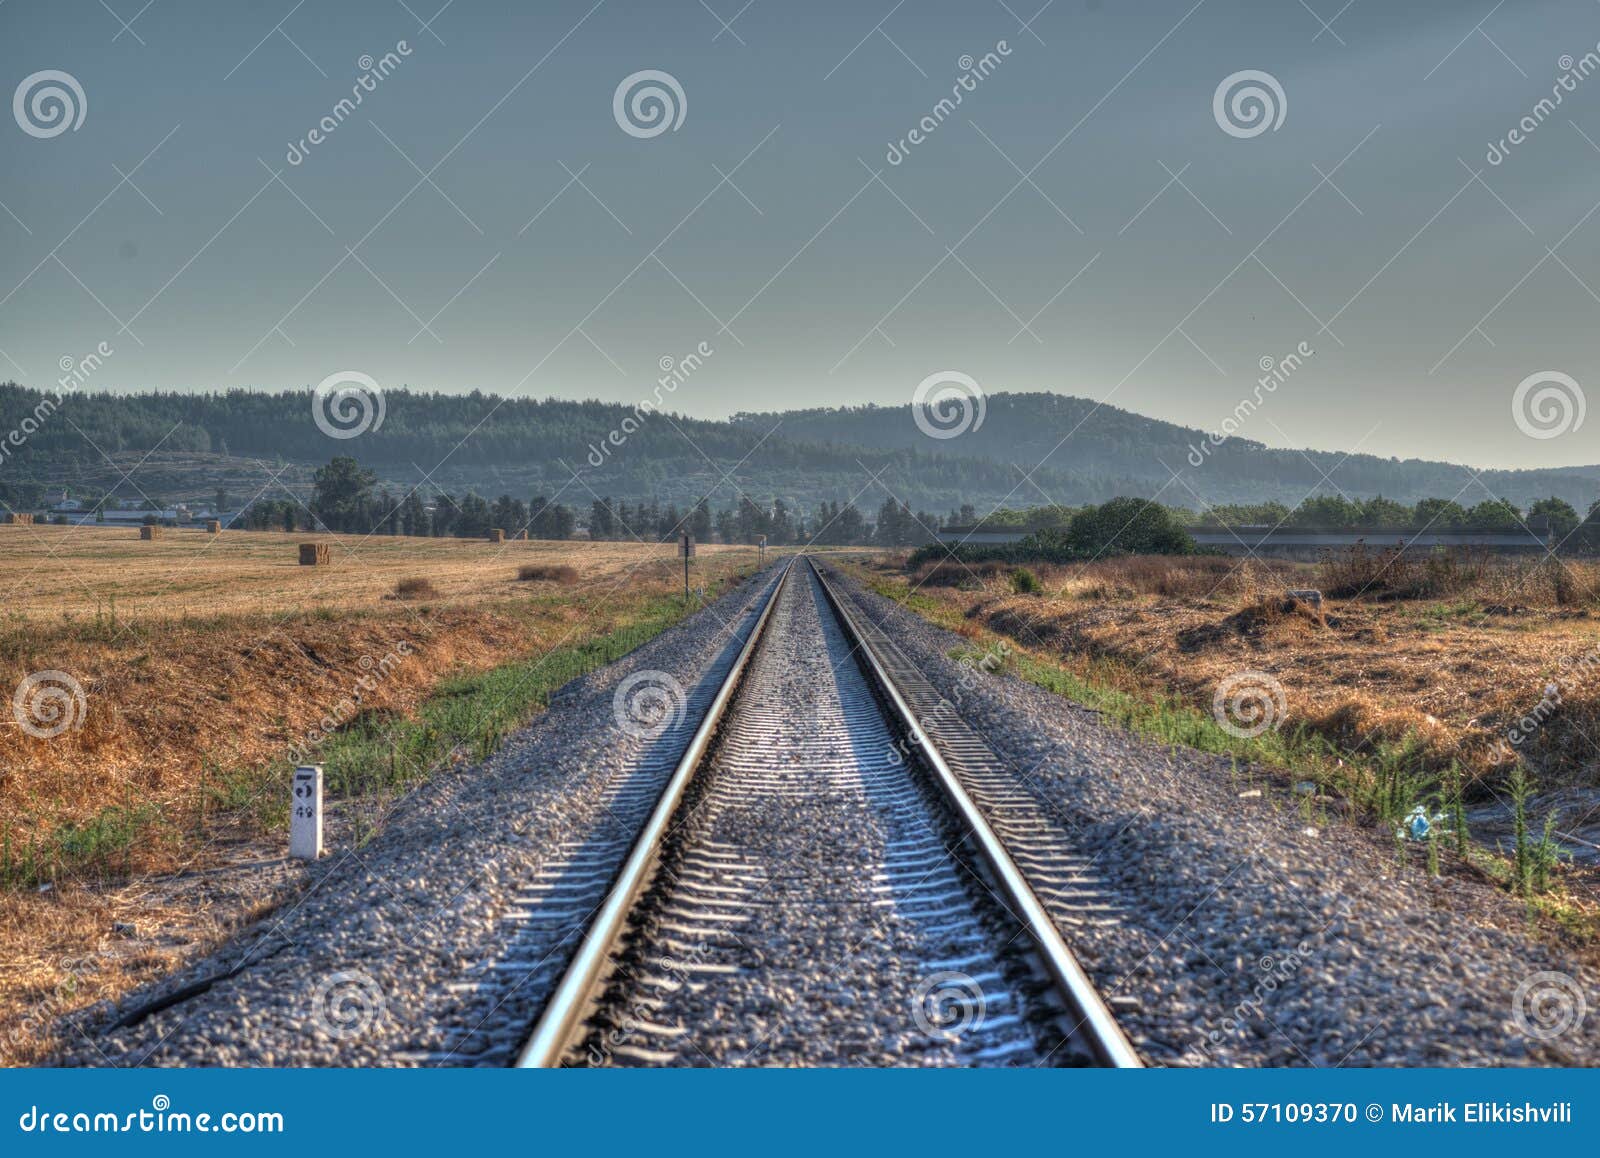 train rail